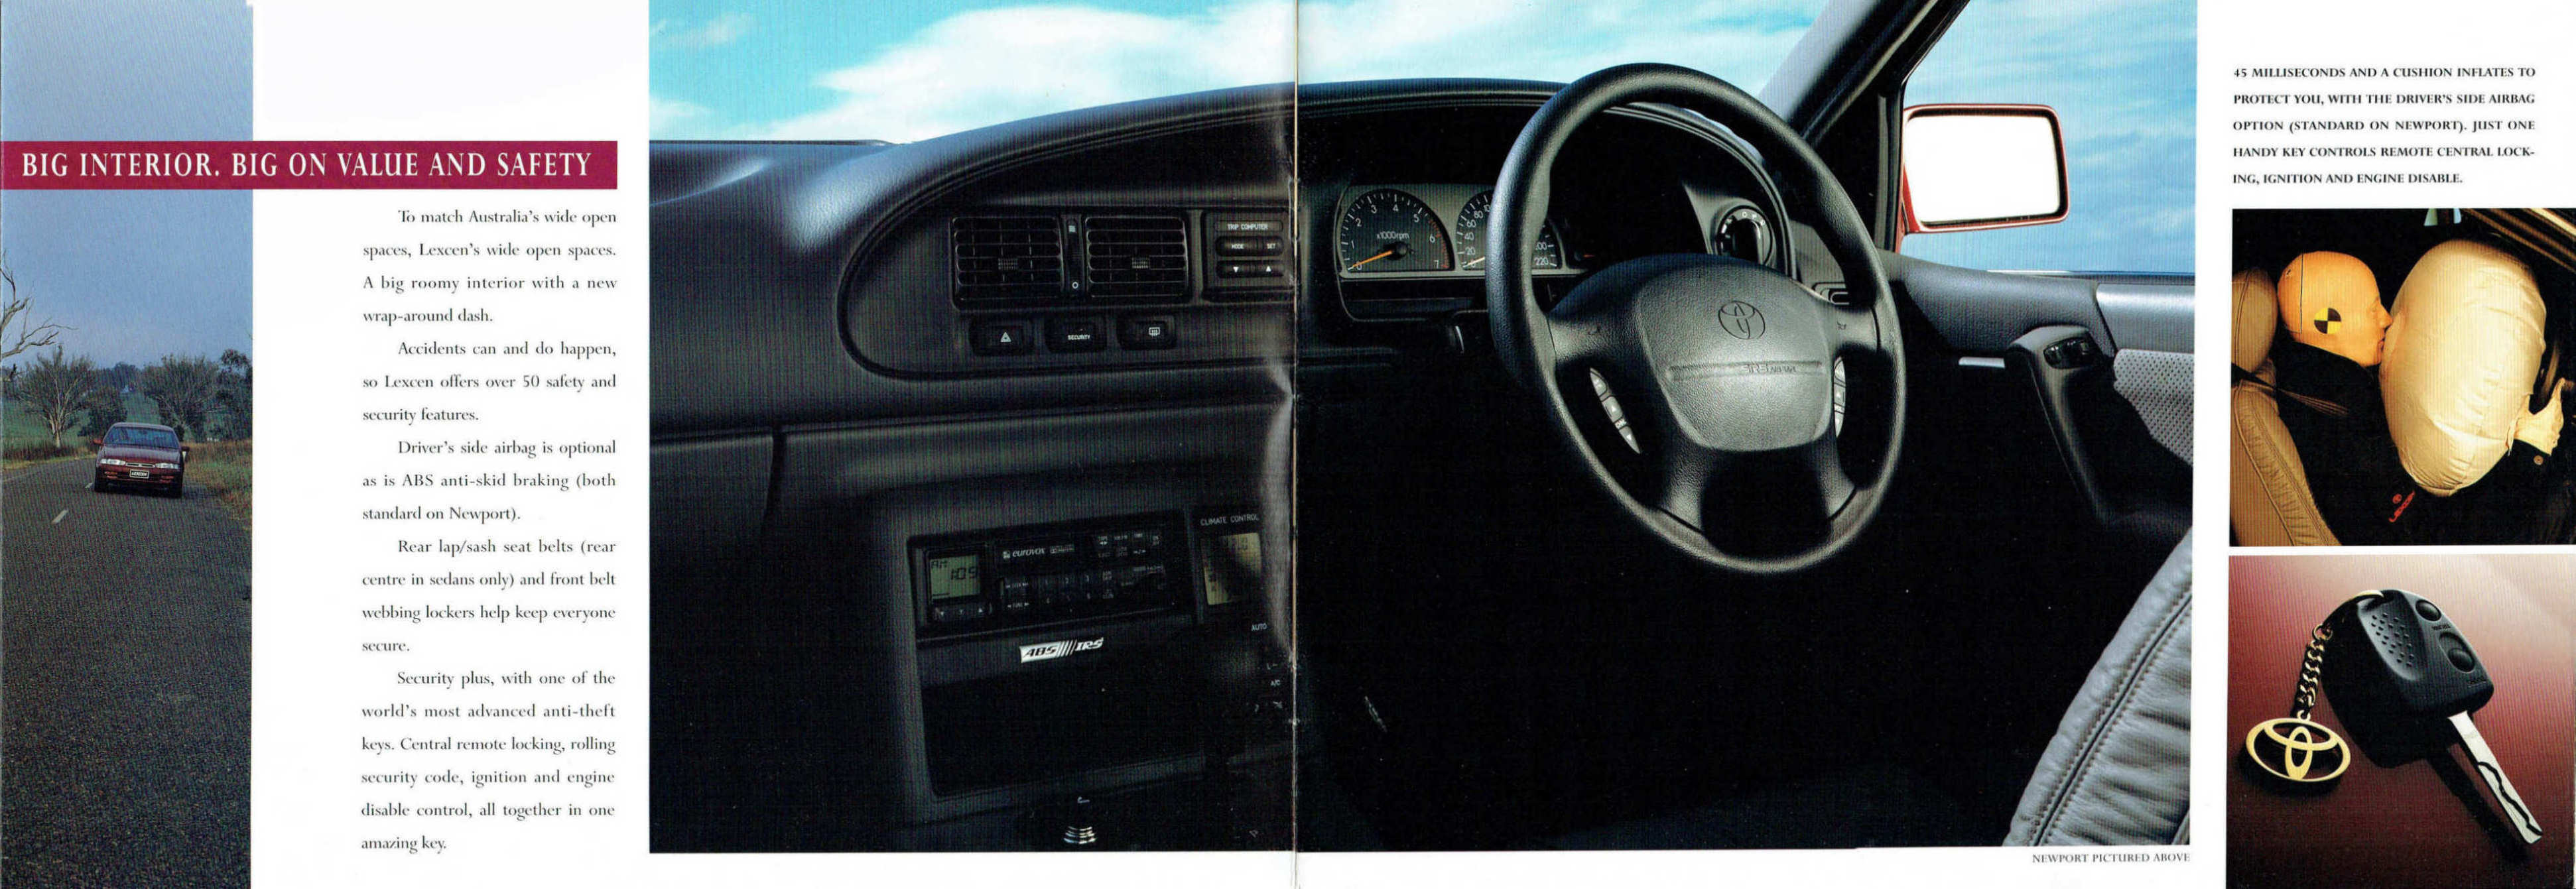 1994_Toyota_Lexcen-06-07